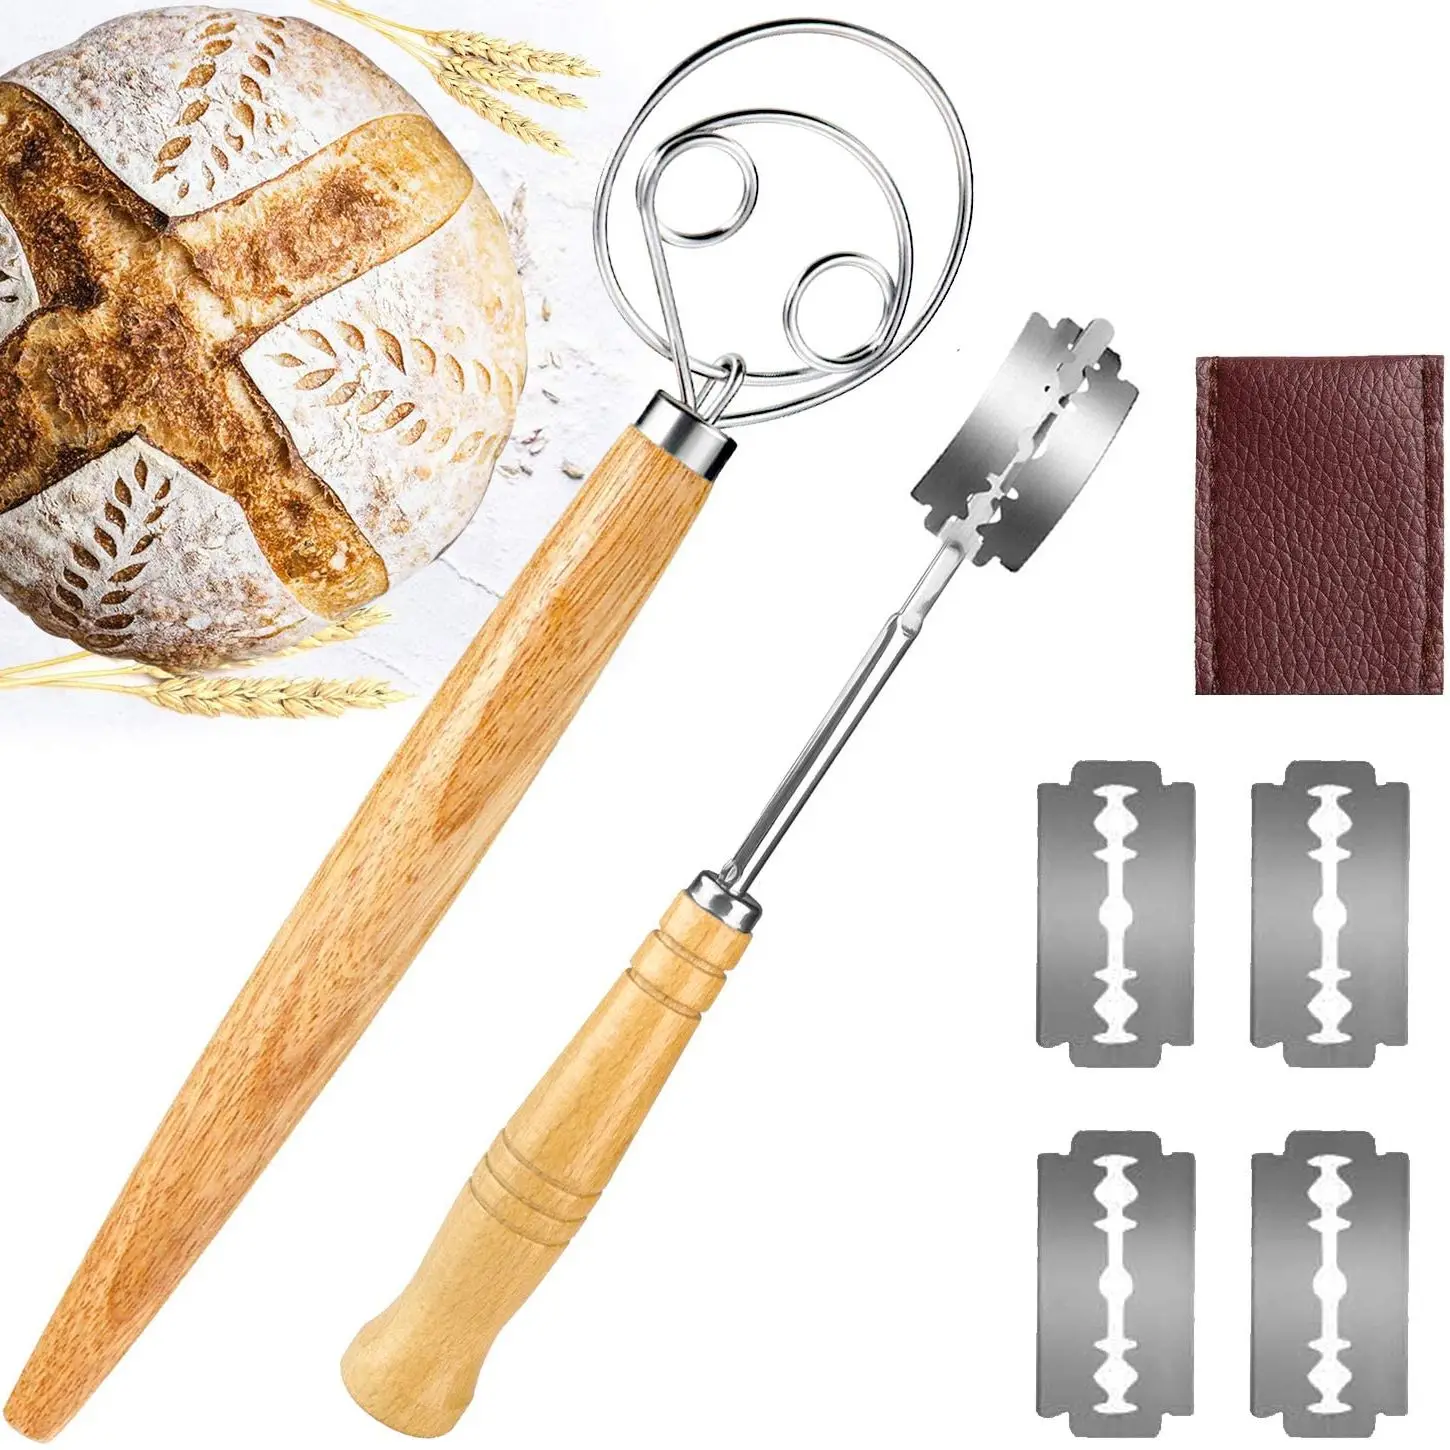 Juego de batidor de masa de acero inoxidable para panaderos, herramienta de corte de pan con 5 cuchillas, cubierta protectora de cuero